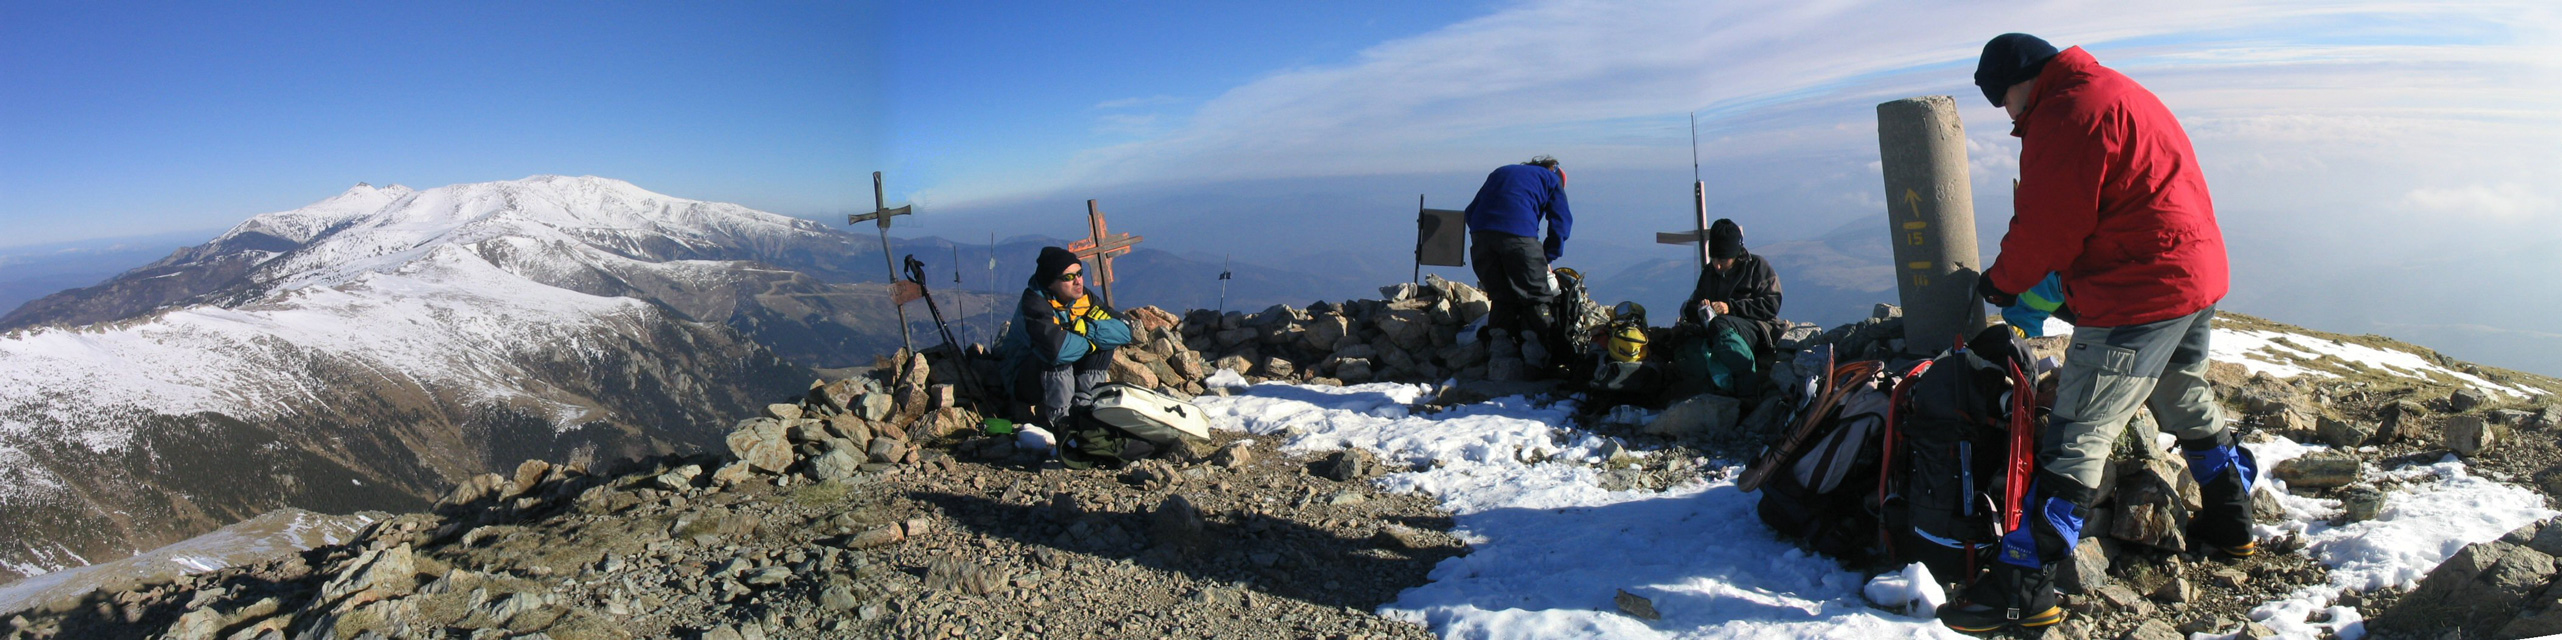 Cima del Costabona (2464 m) con el Macizo del Canigó (2784 m) al fondo